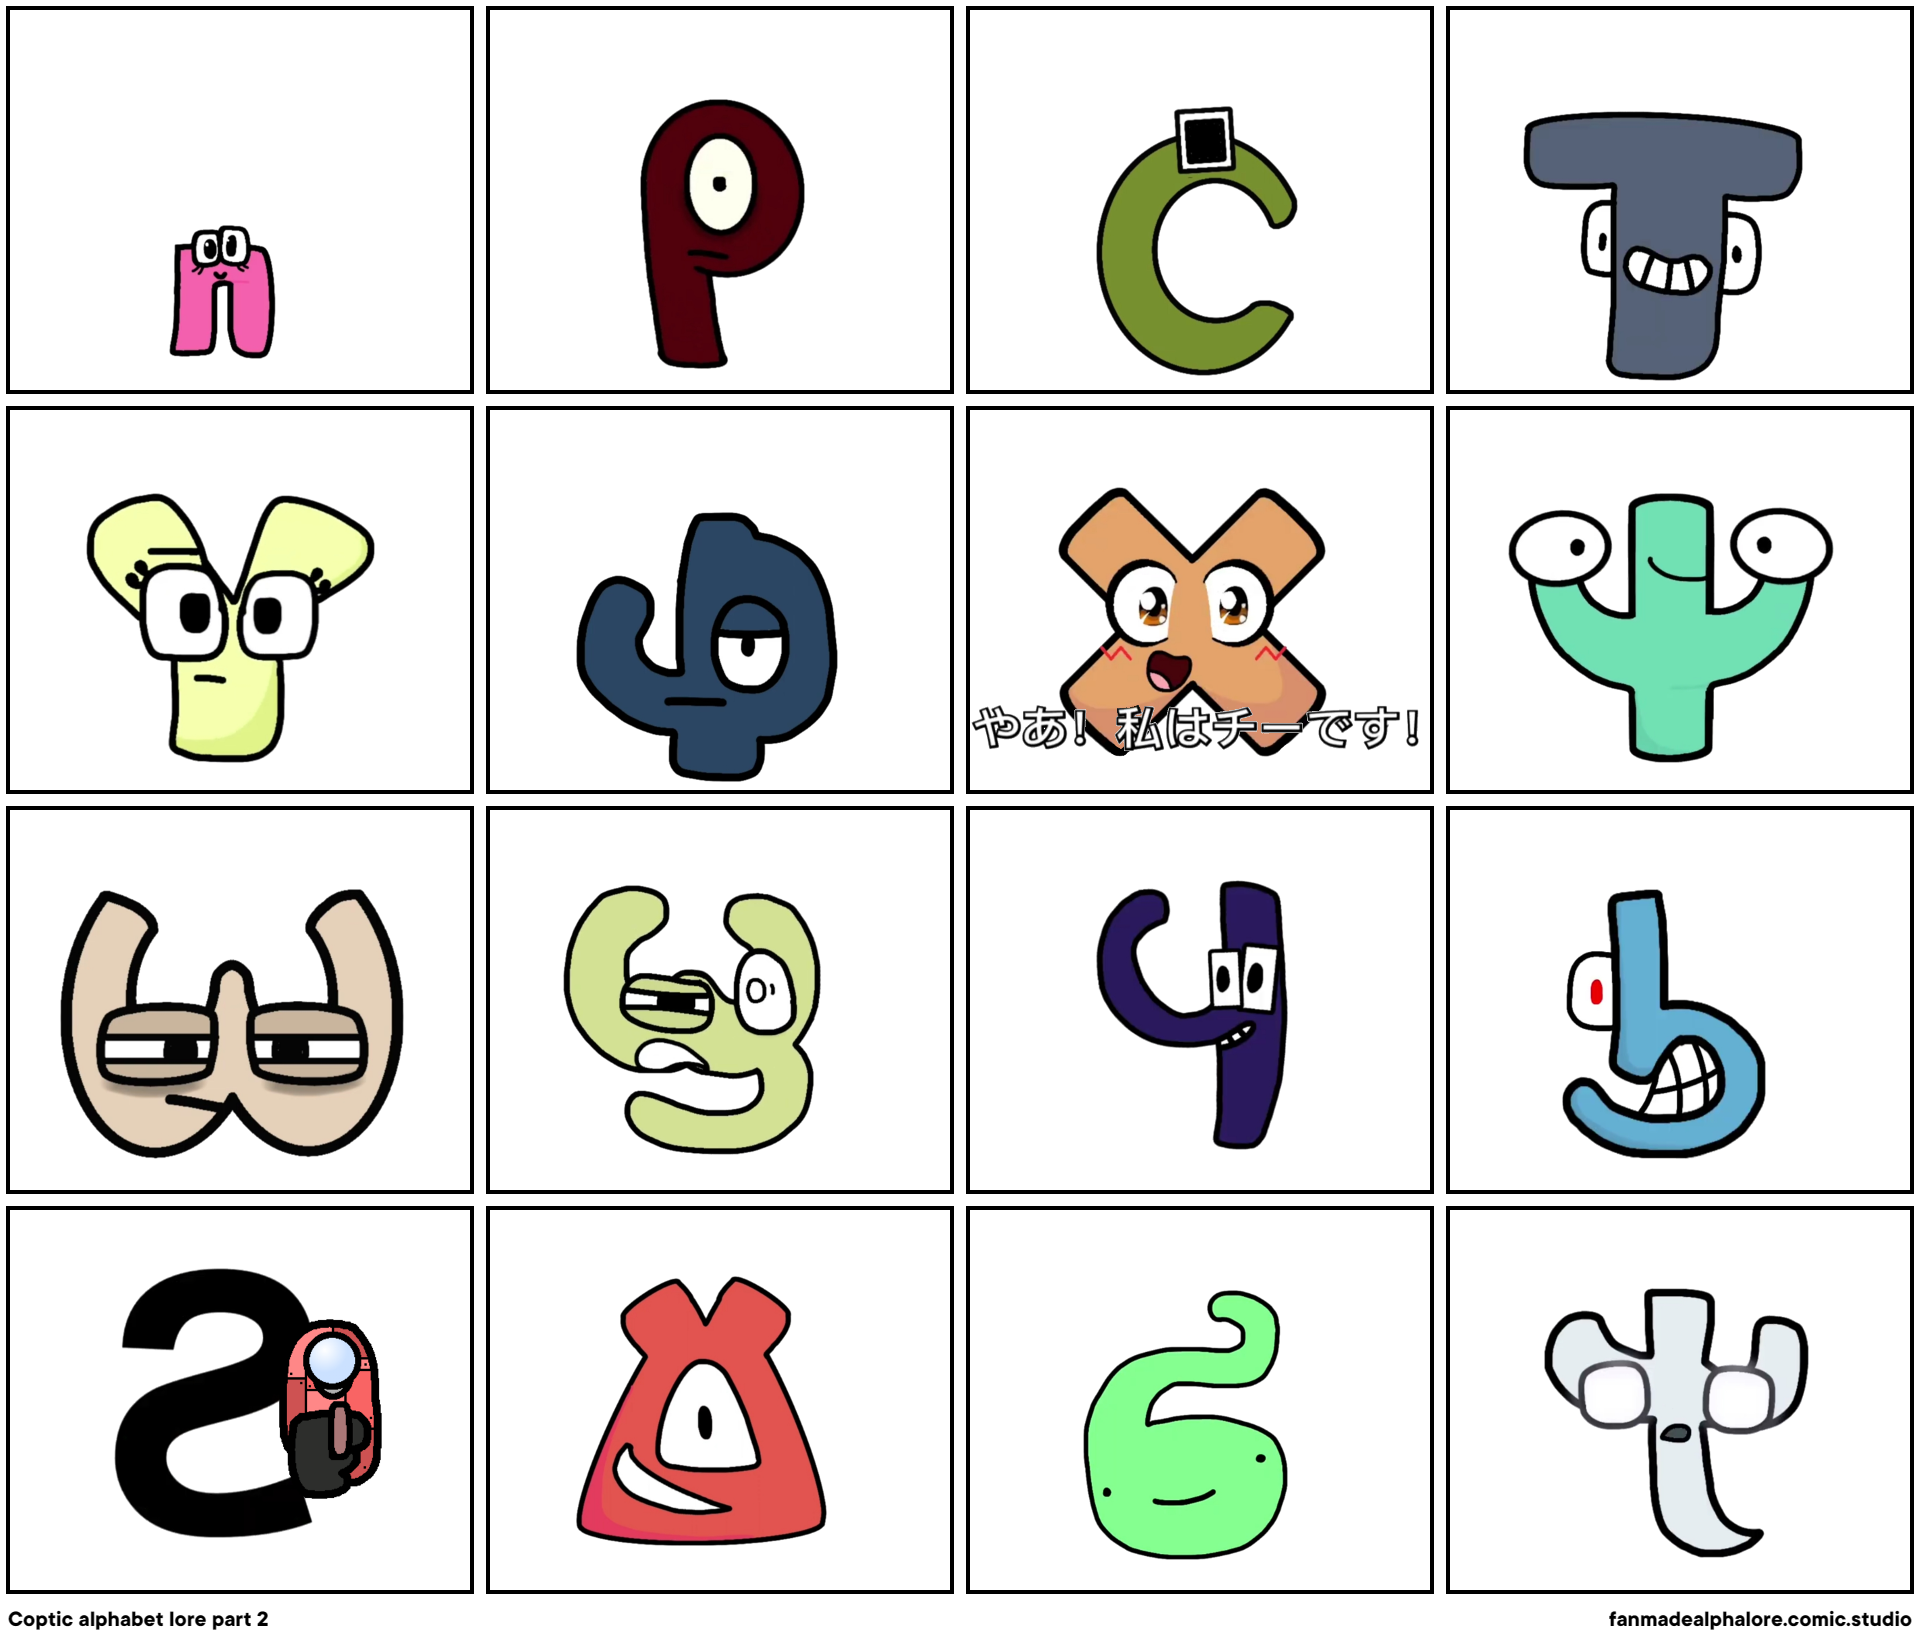 Coptic alphabet lore part 2 - Comic Studio